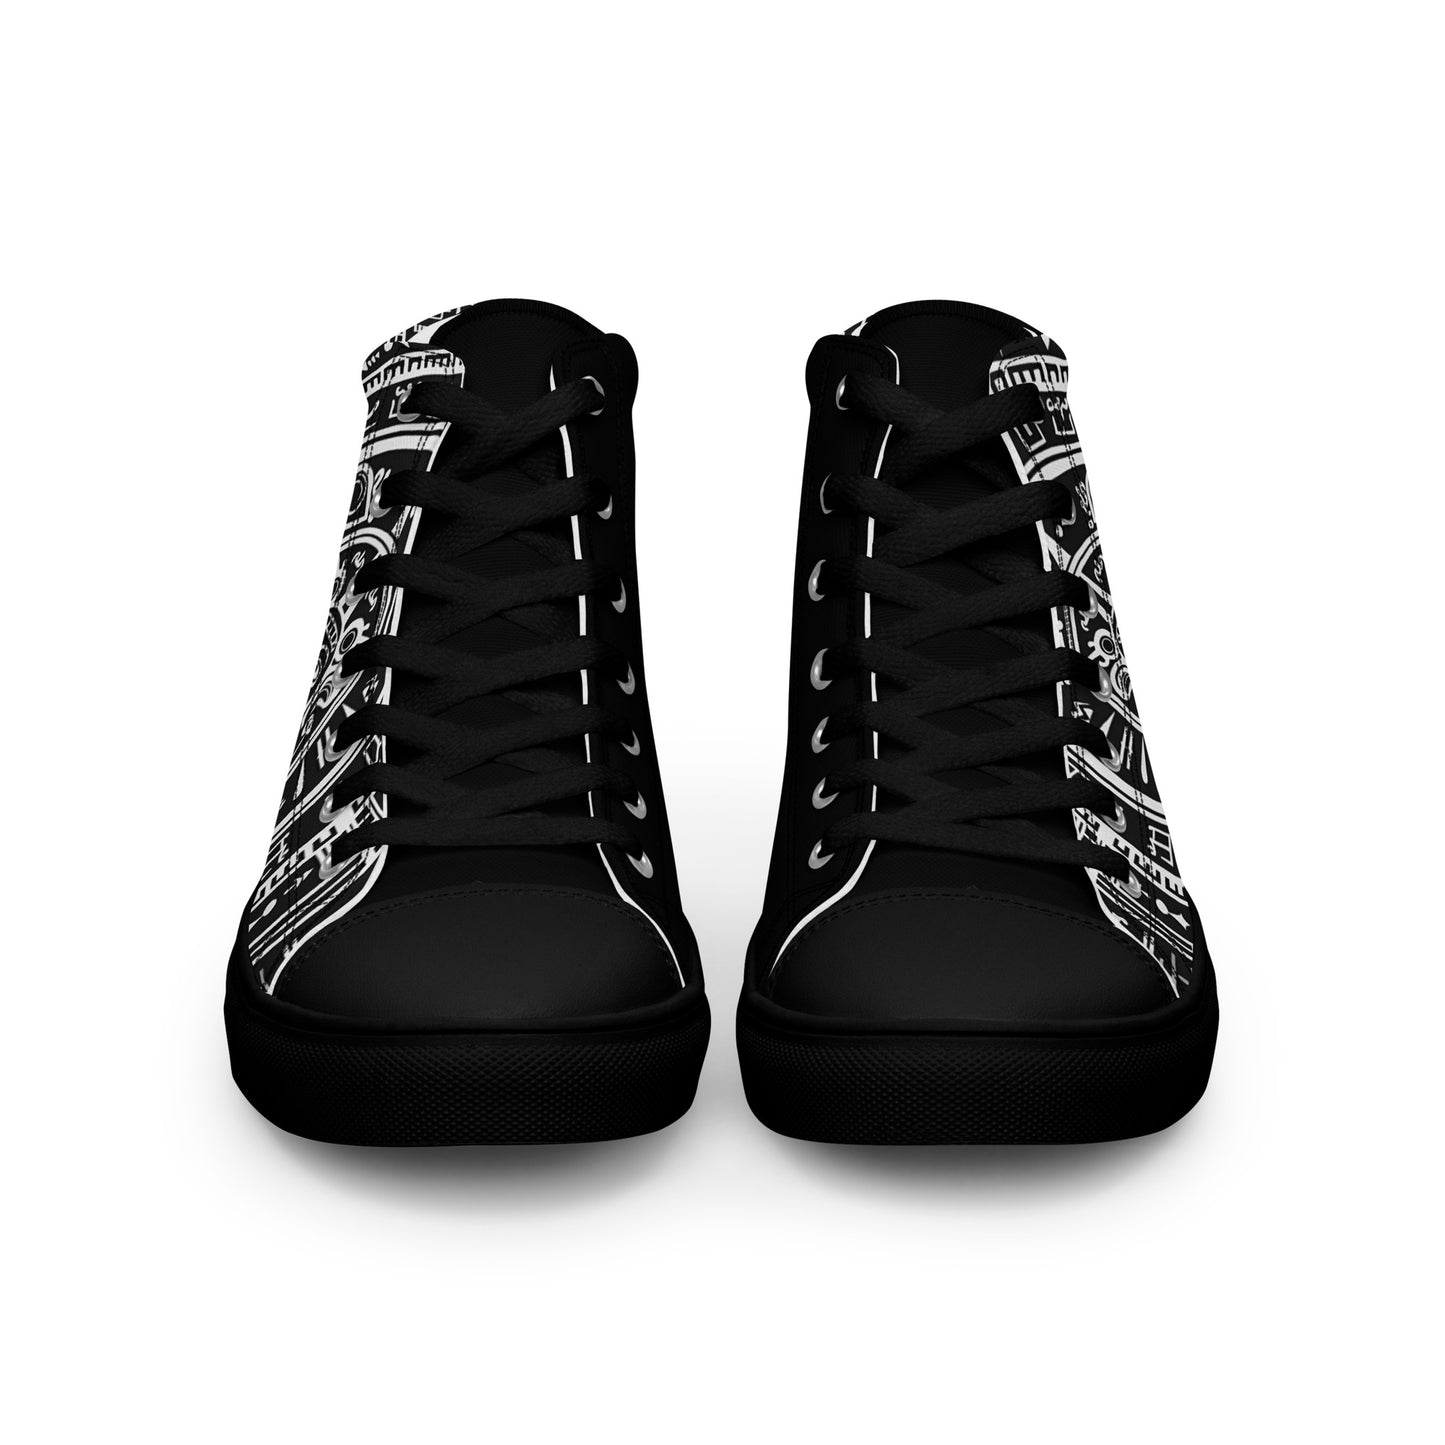 Calendario Múuyal - Men - Black - High top shoes